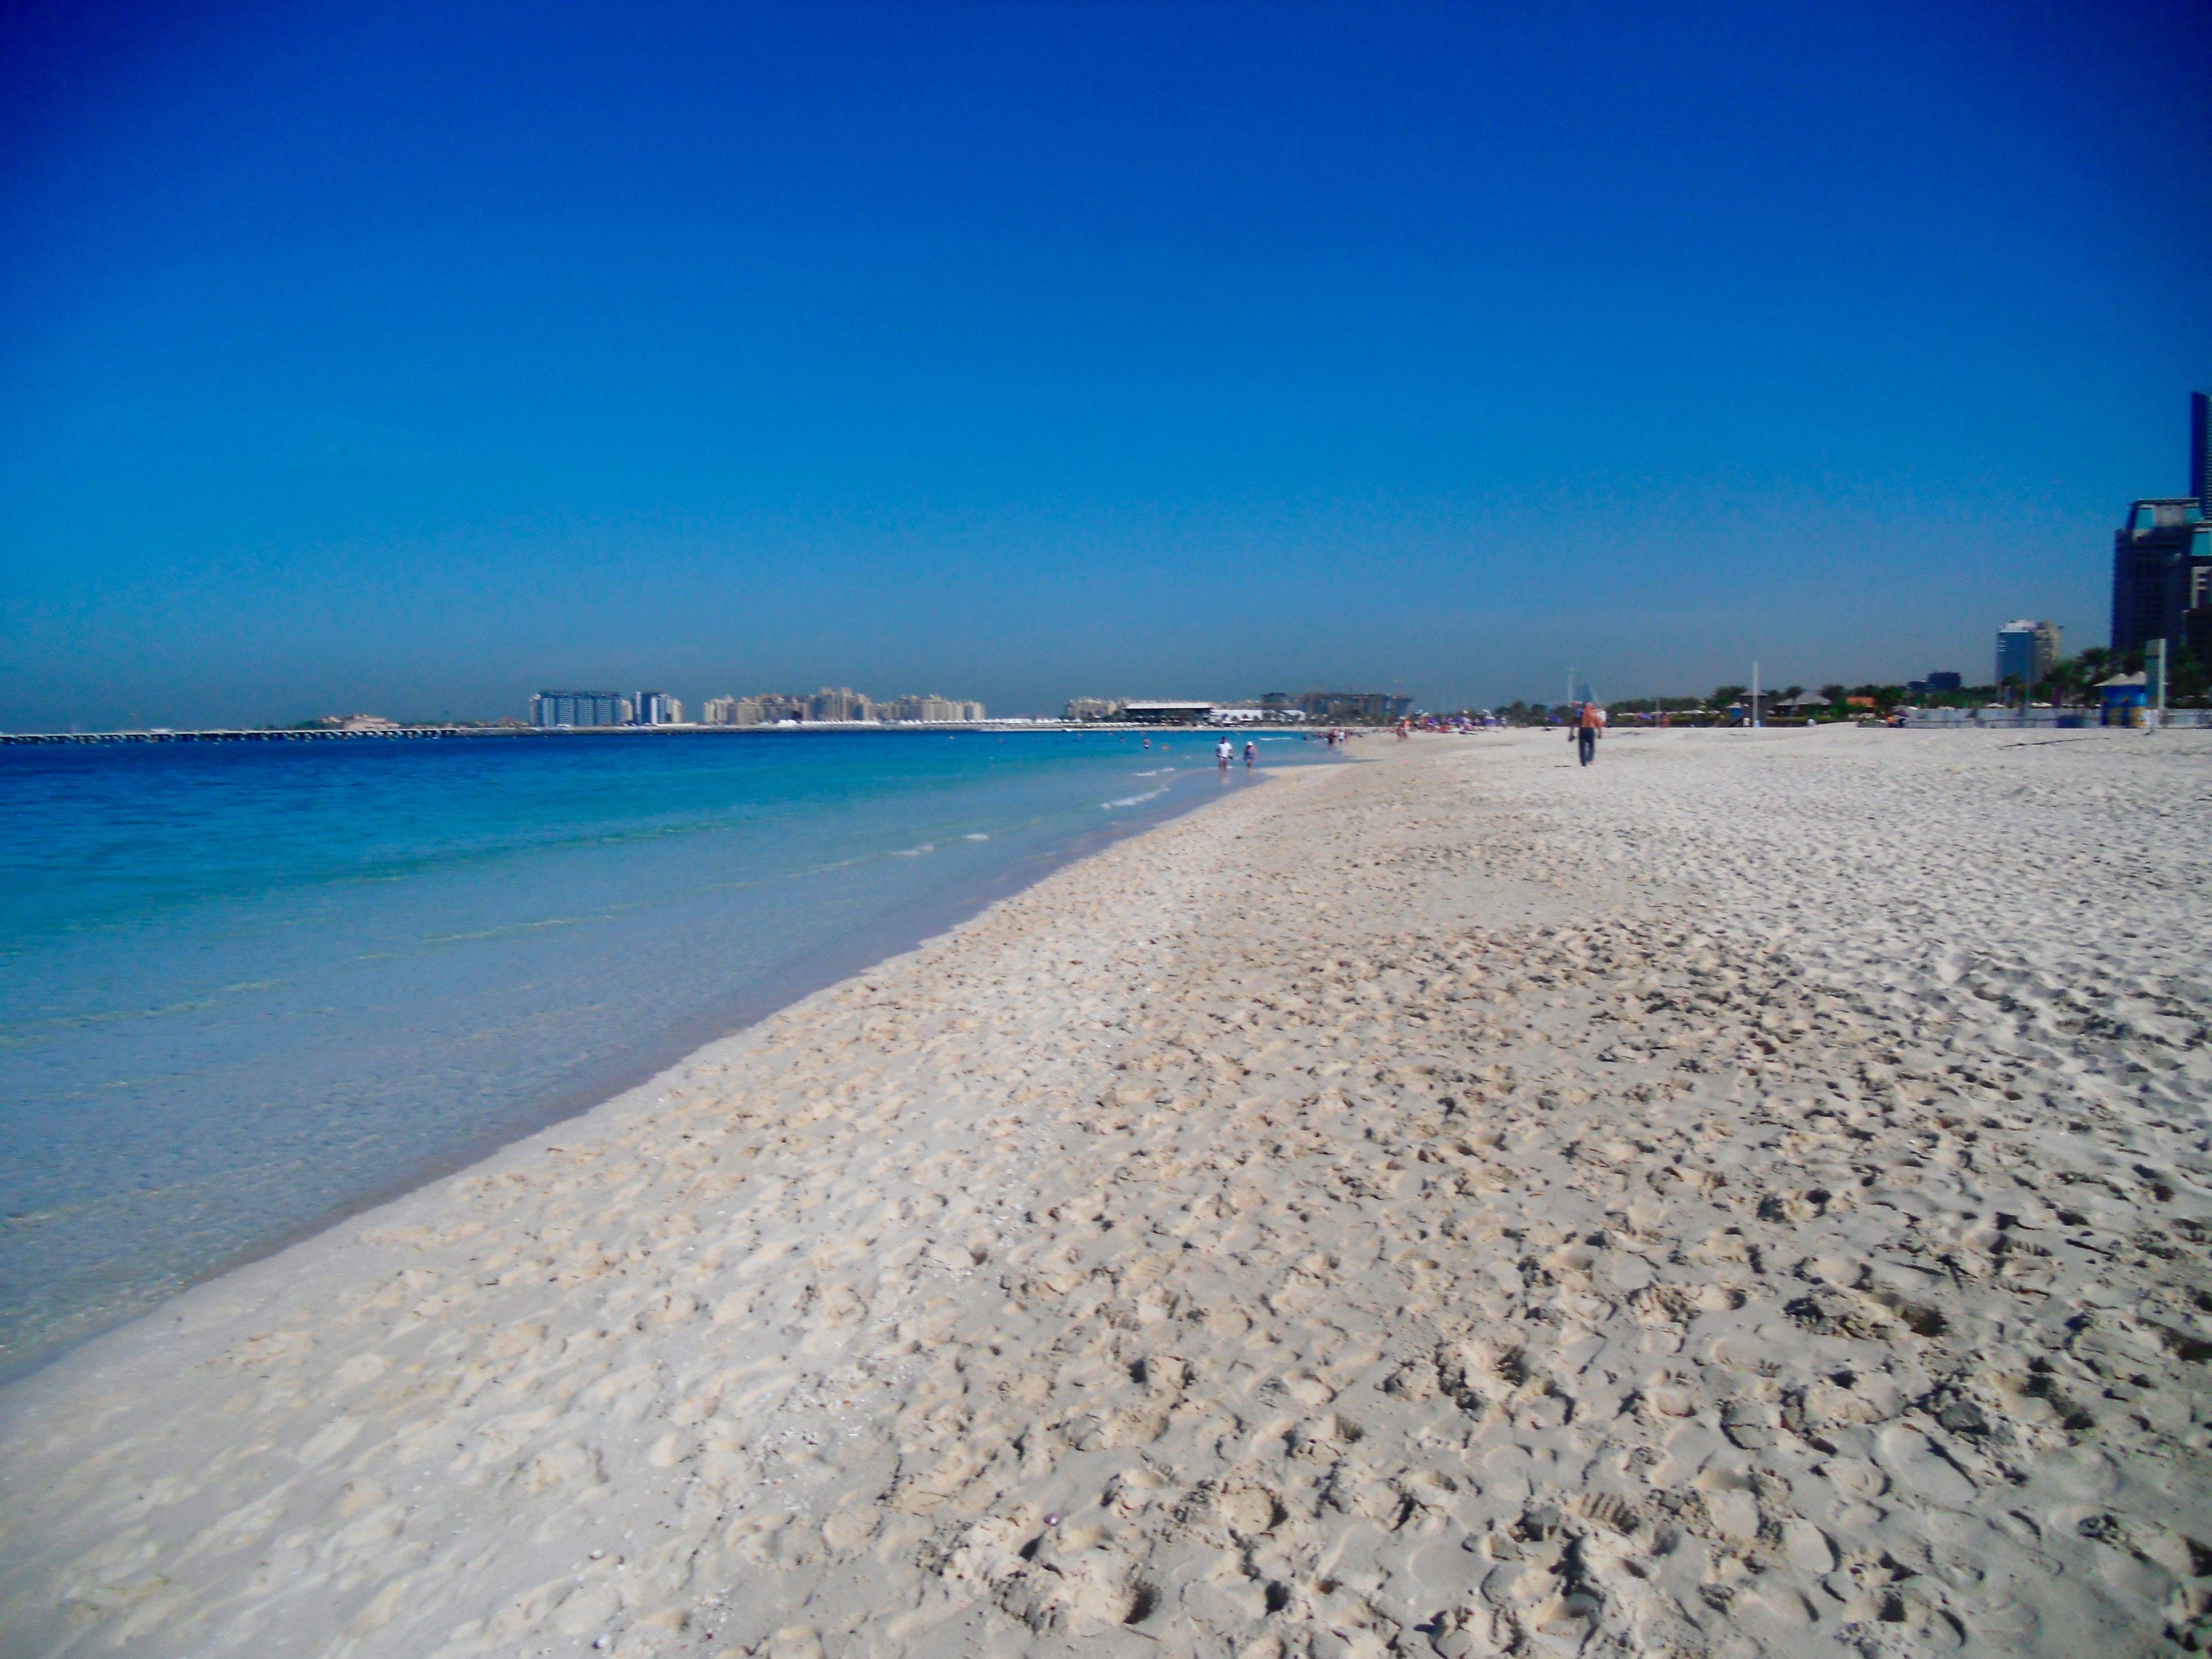 迪拜海滩风景图片